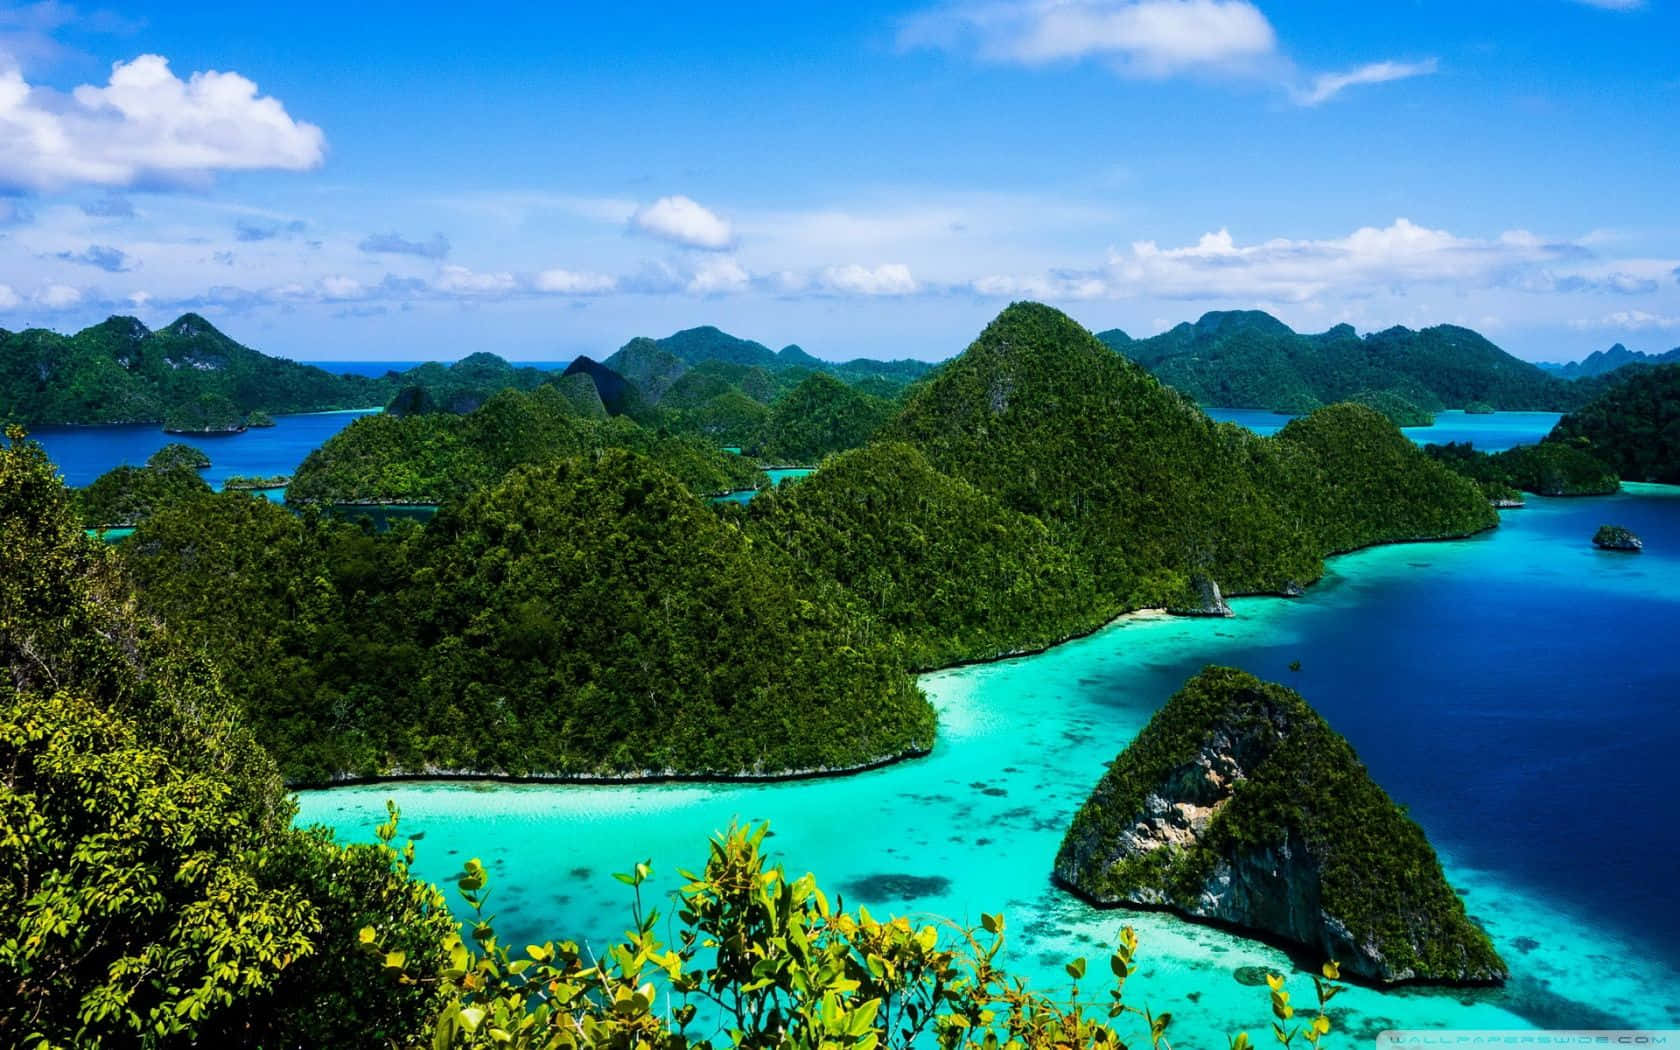 Impresionantepaisaje De Las Islas De Indonesia